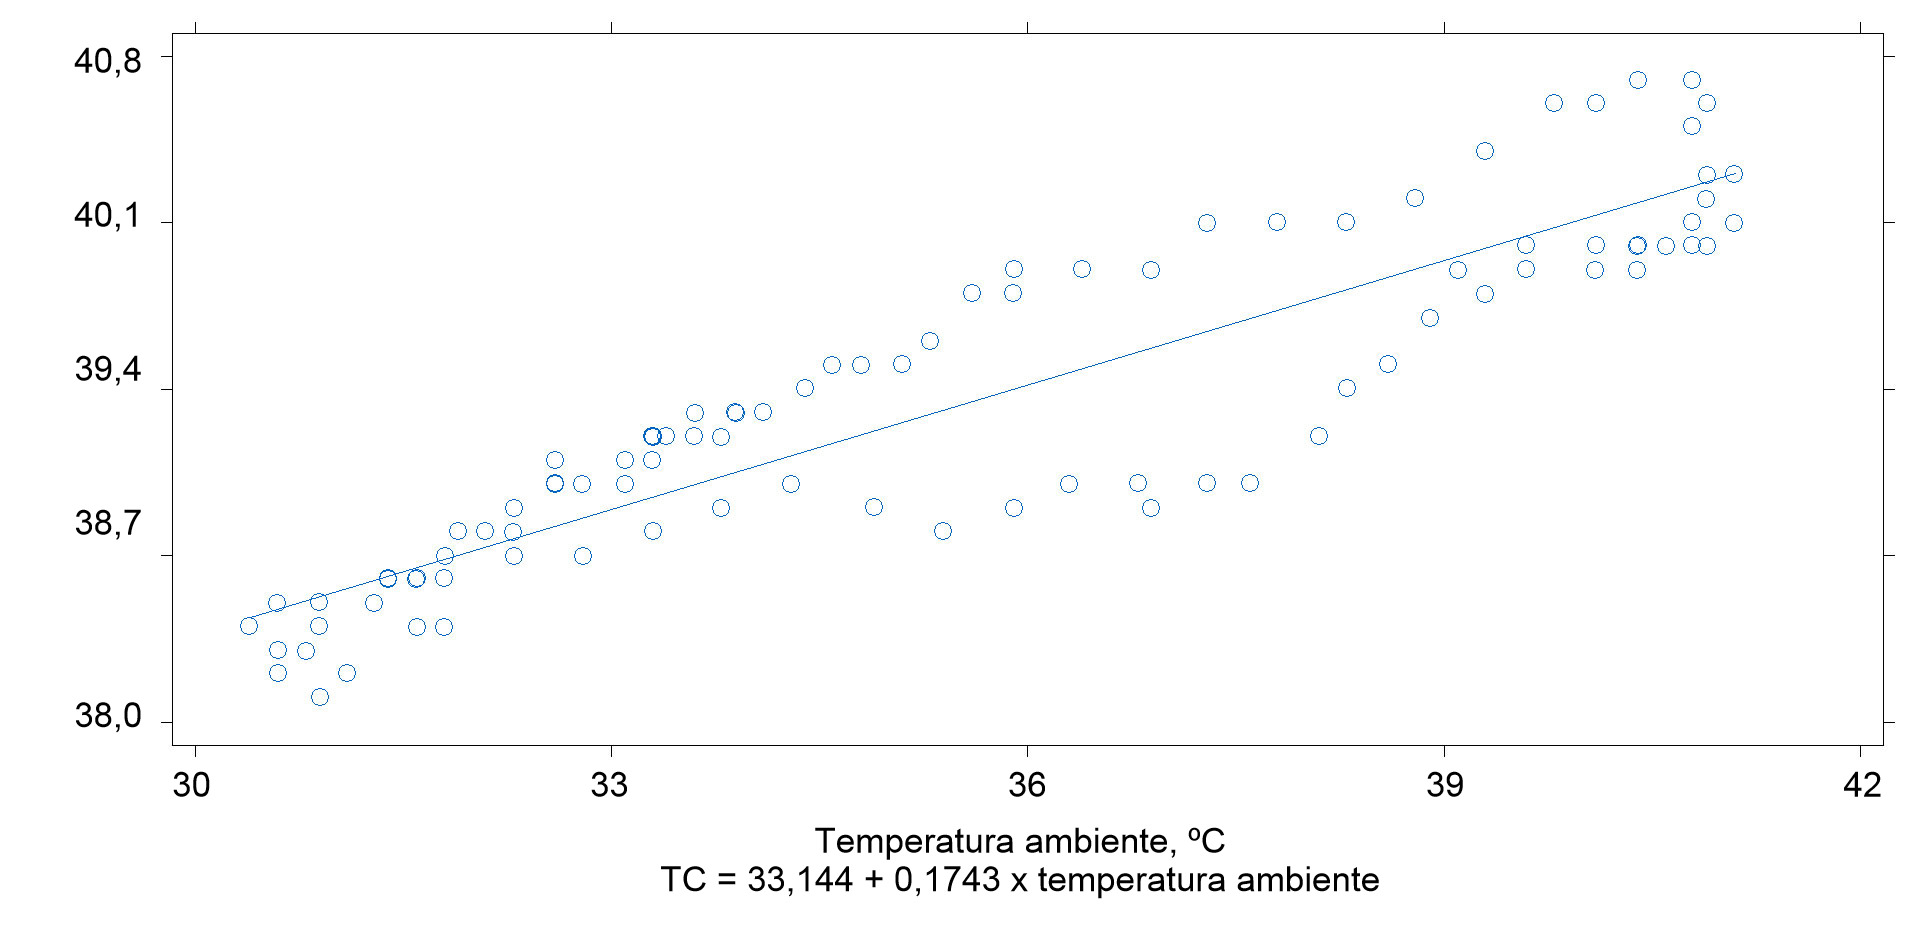 Relación entre la temperatura ambiente y la temperatura corporal de cerdos (r2 = 0.90)